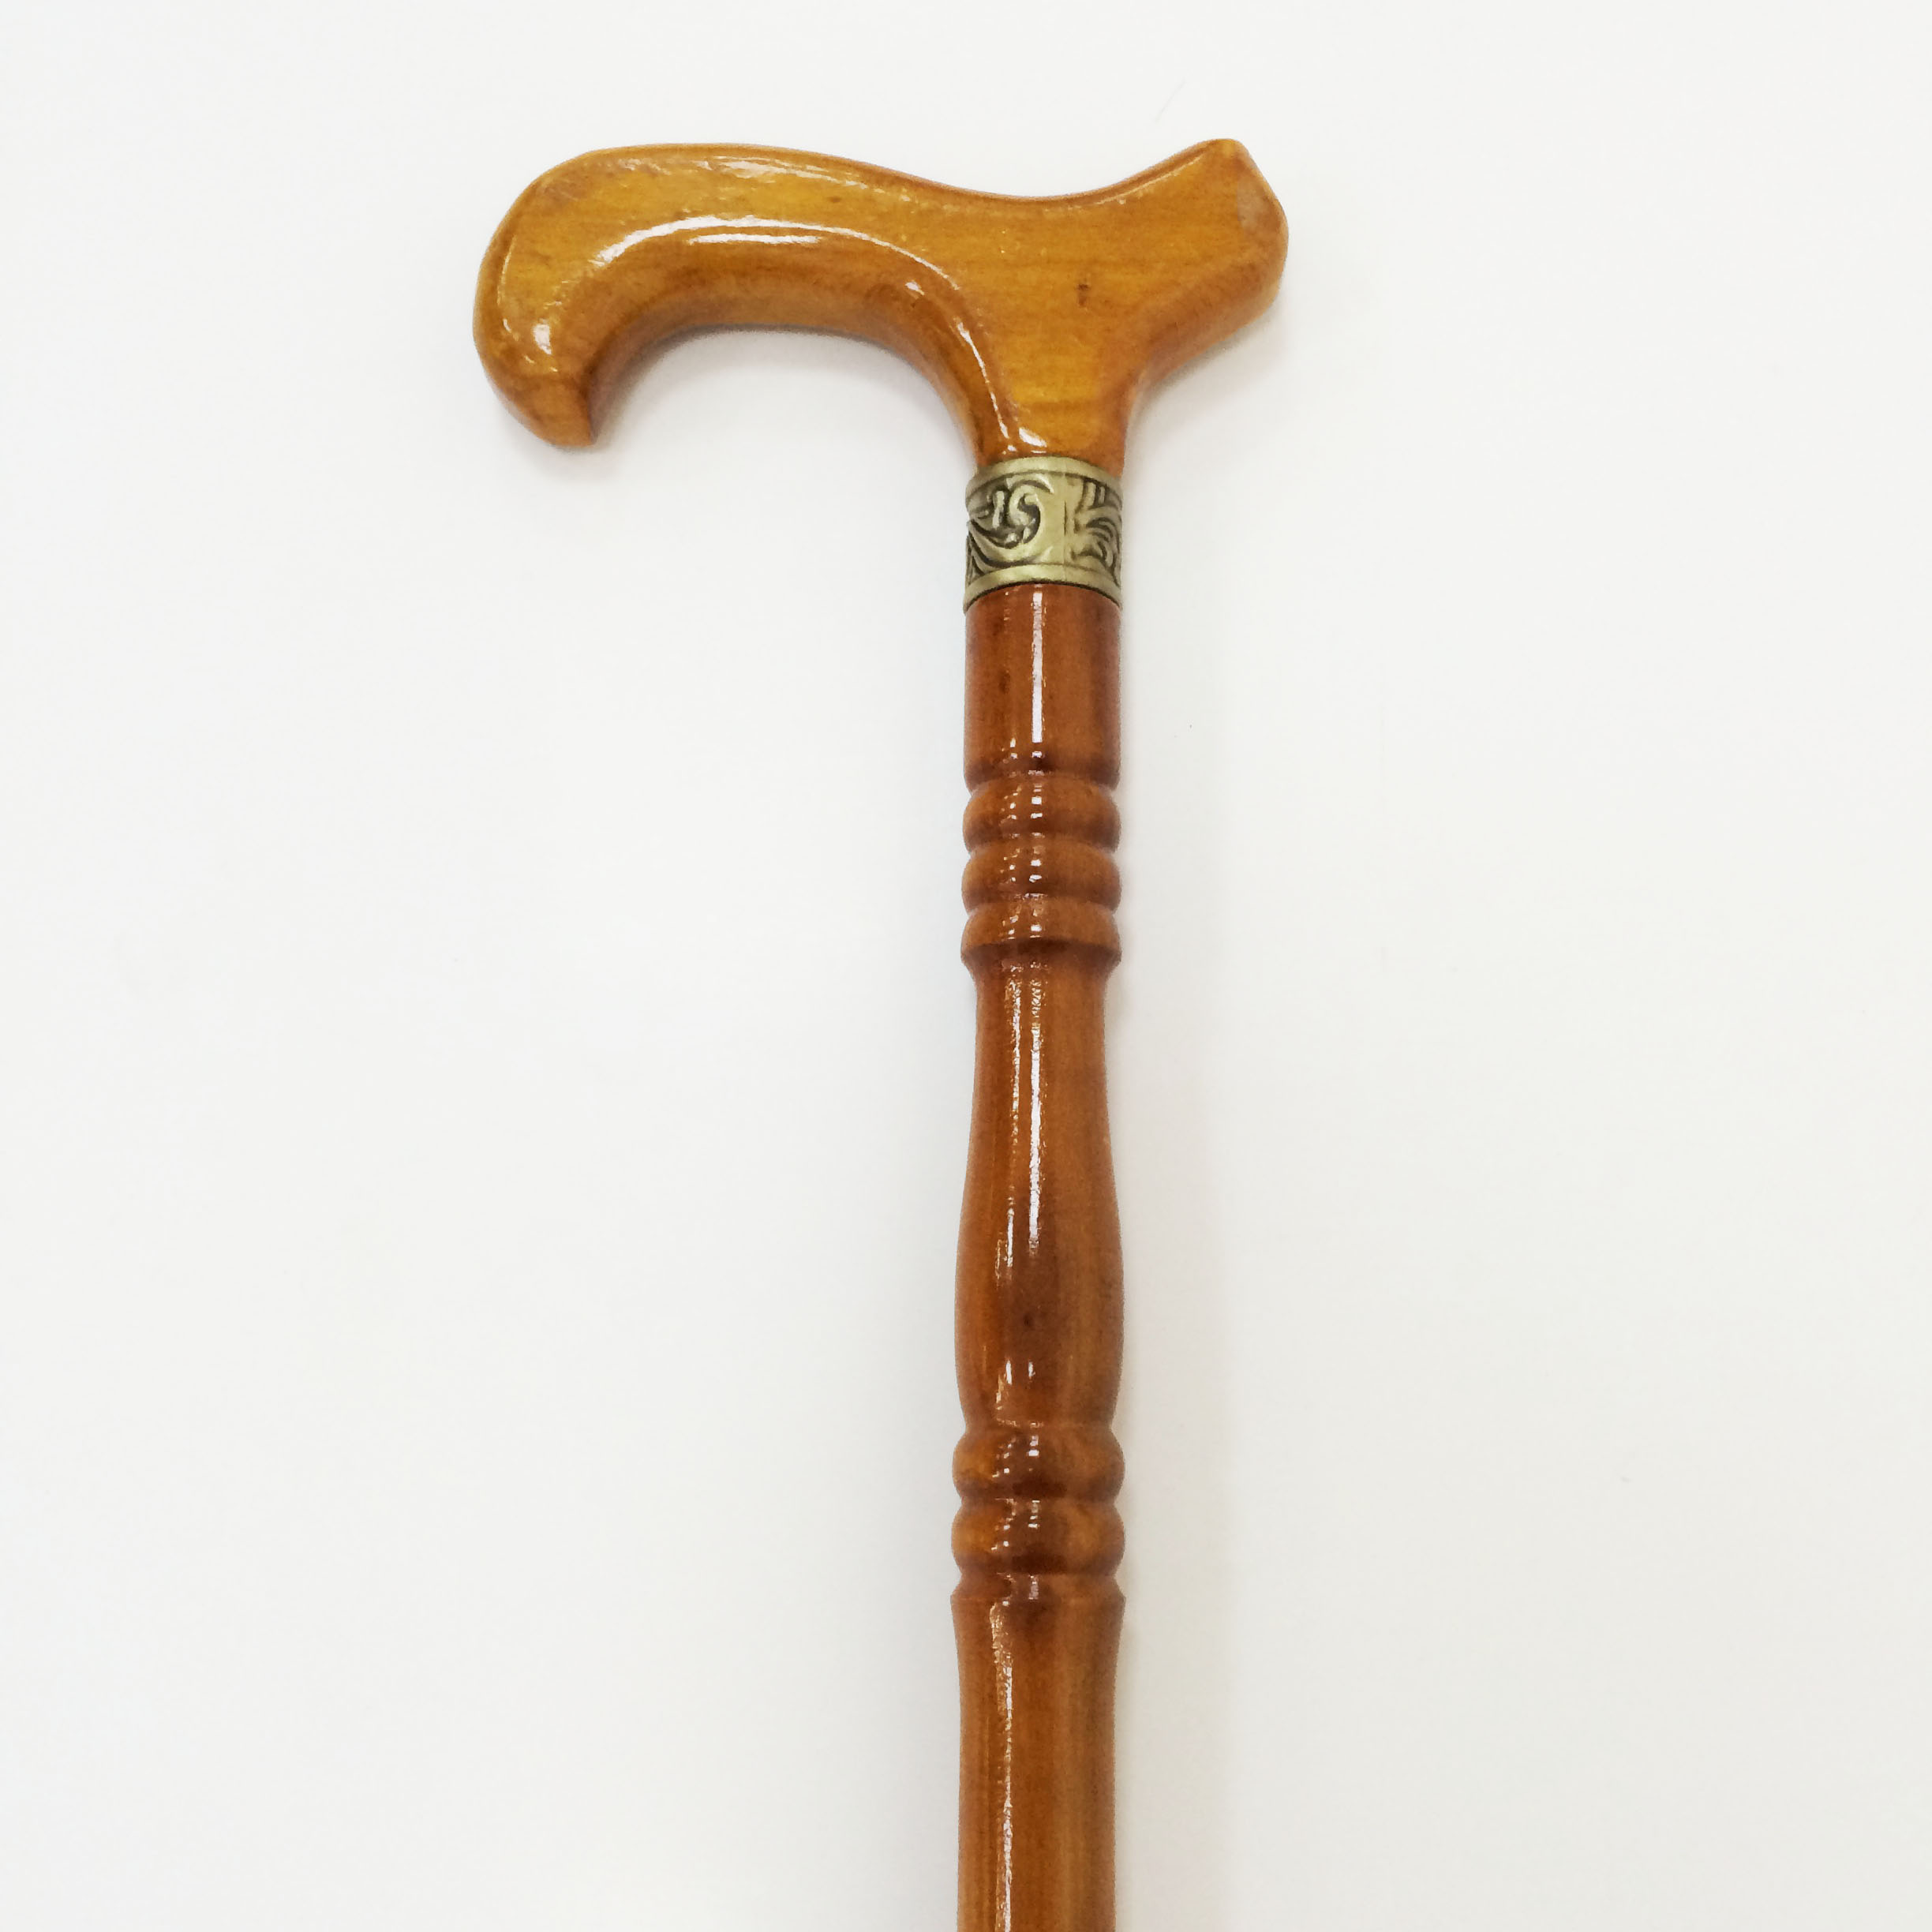 厂家古玩杂件批发黄铜拐杖做旧仿古寿星手杖送老人龙头拐杖头新款-阿里巴巴